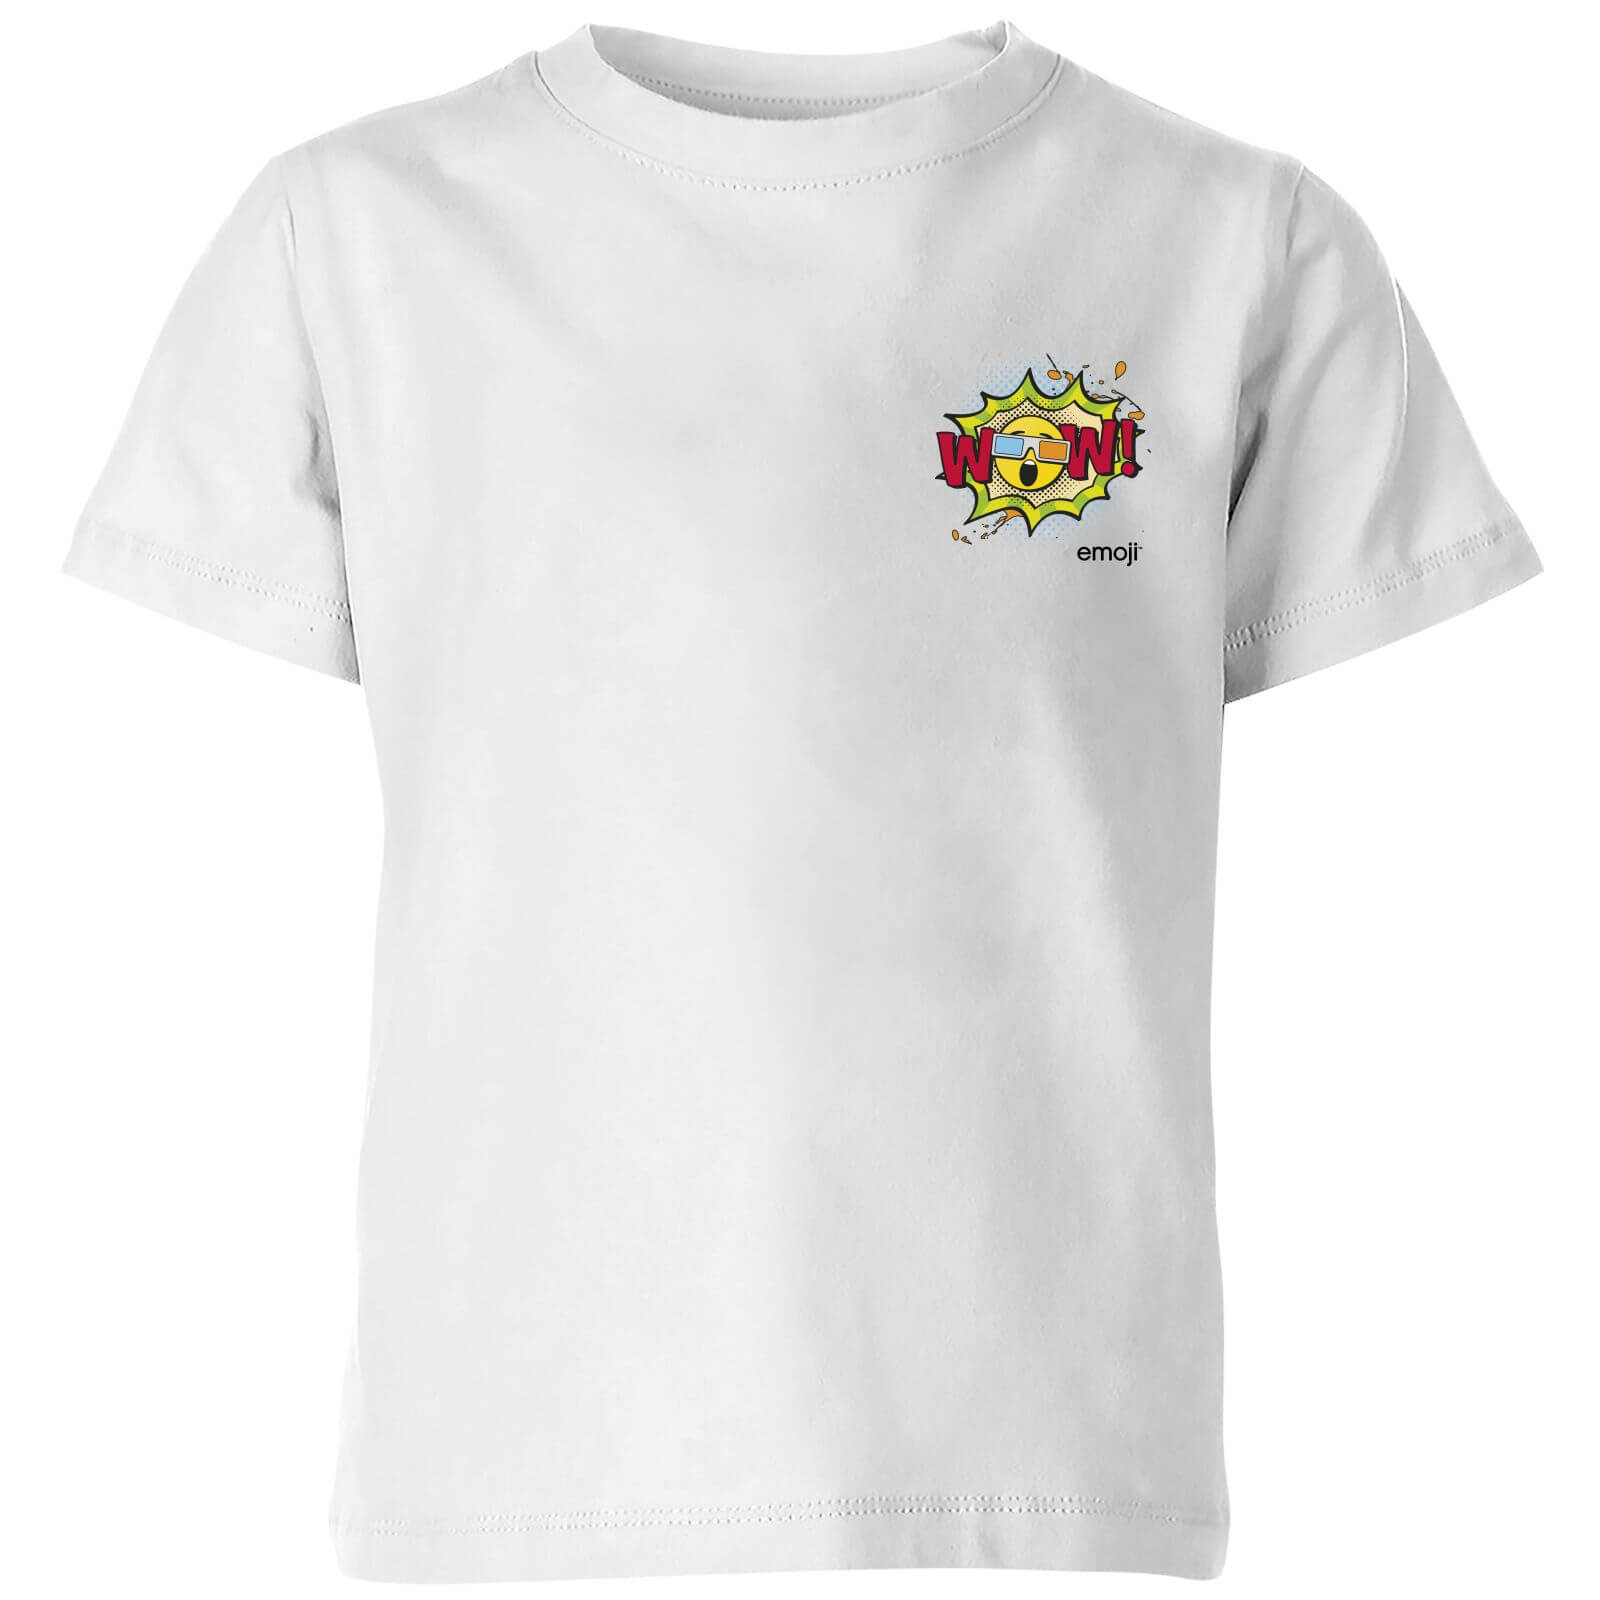 Emoji WOW Kids' T-Shirt - White - 3-4 Years - White